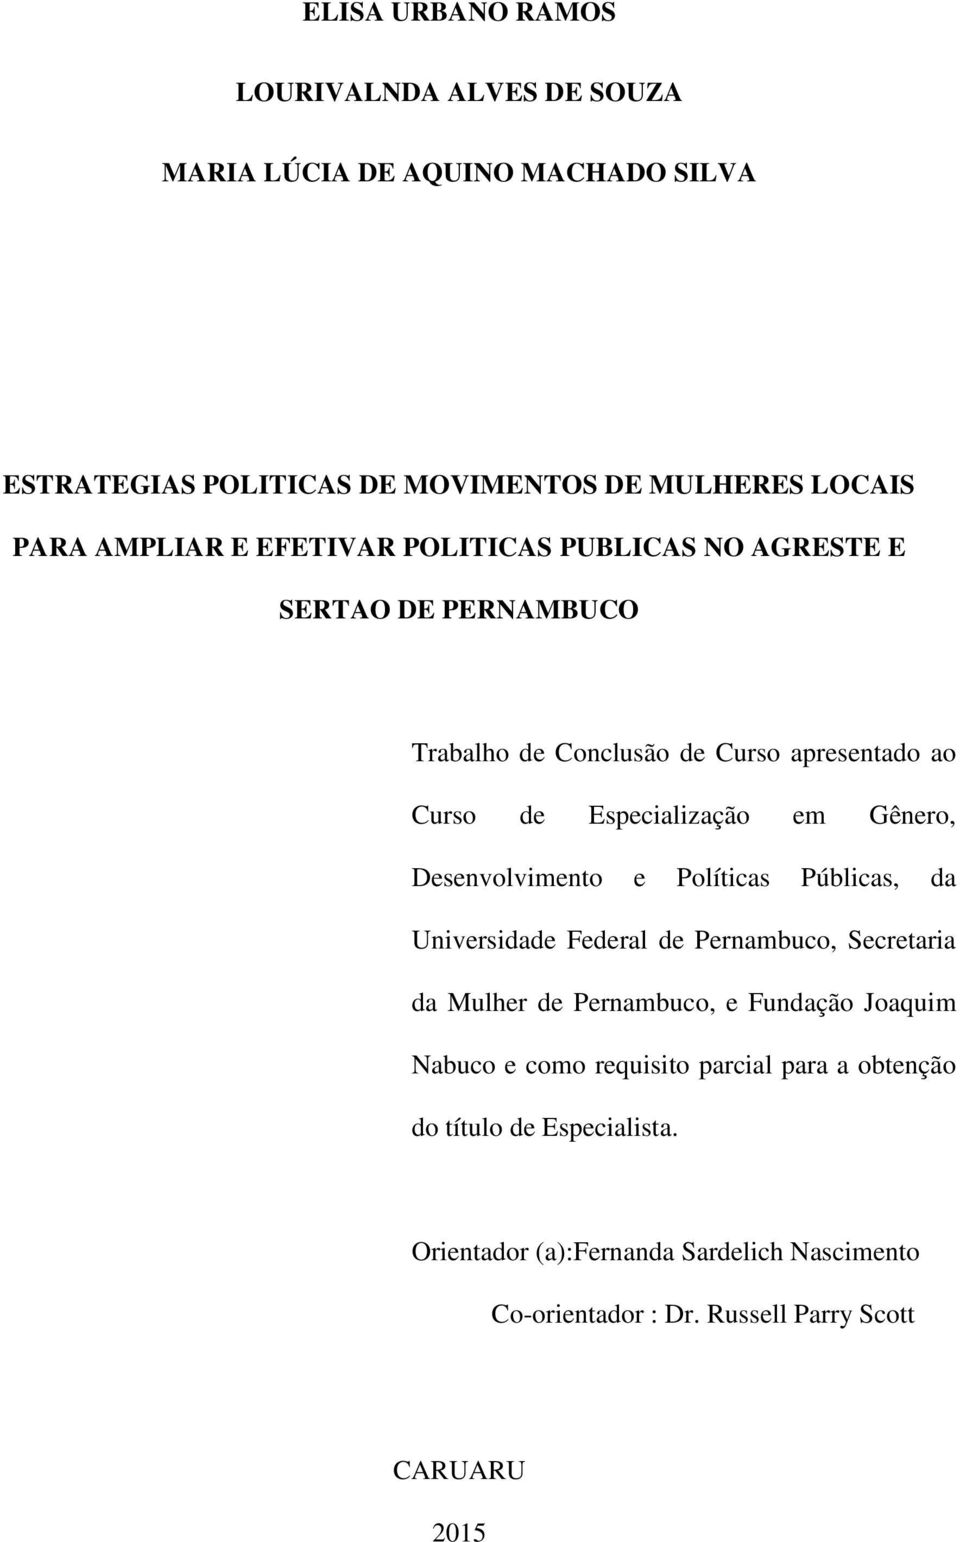 Desenvolvimento e Políticas Públicas, da Universidade Federal de Pernambuco, Secretaria da Mulher de Pernambuco, e Fundação Joaquim Nabuco e como